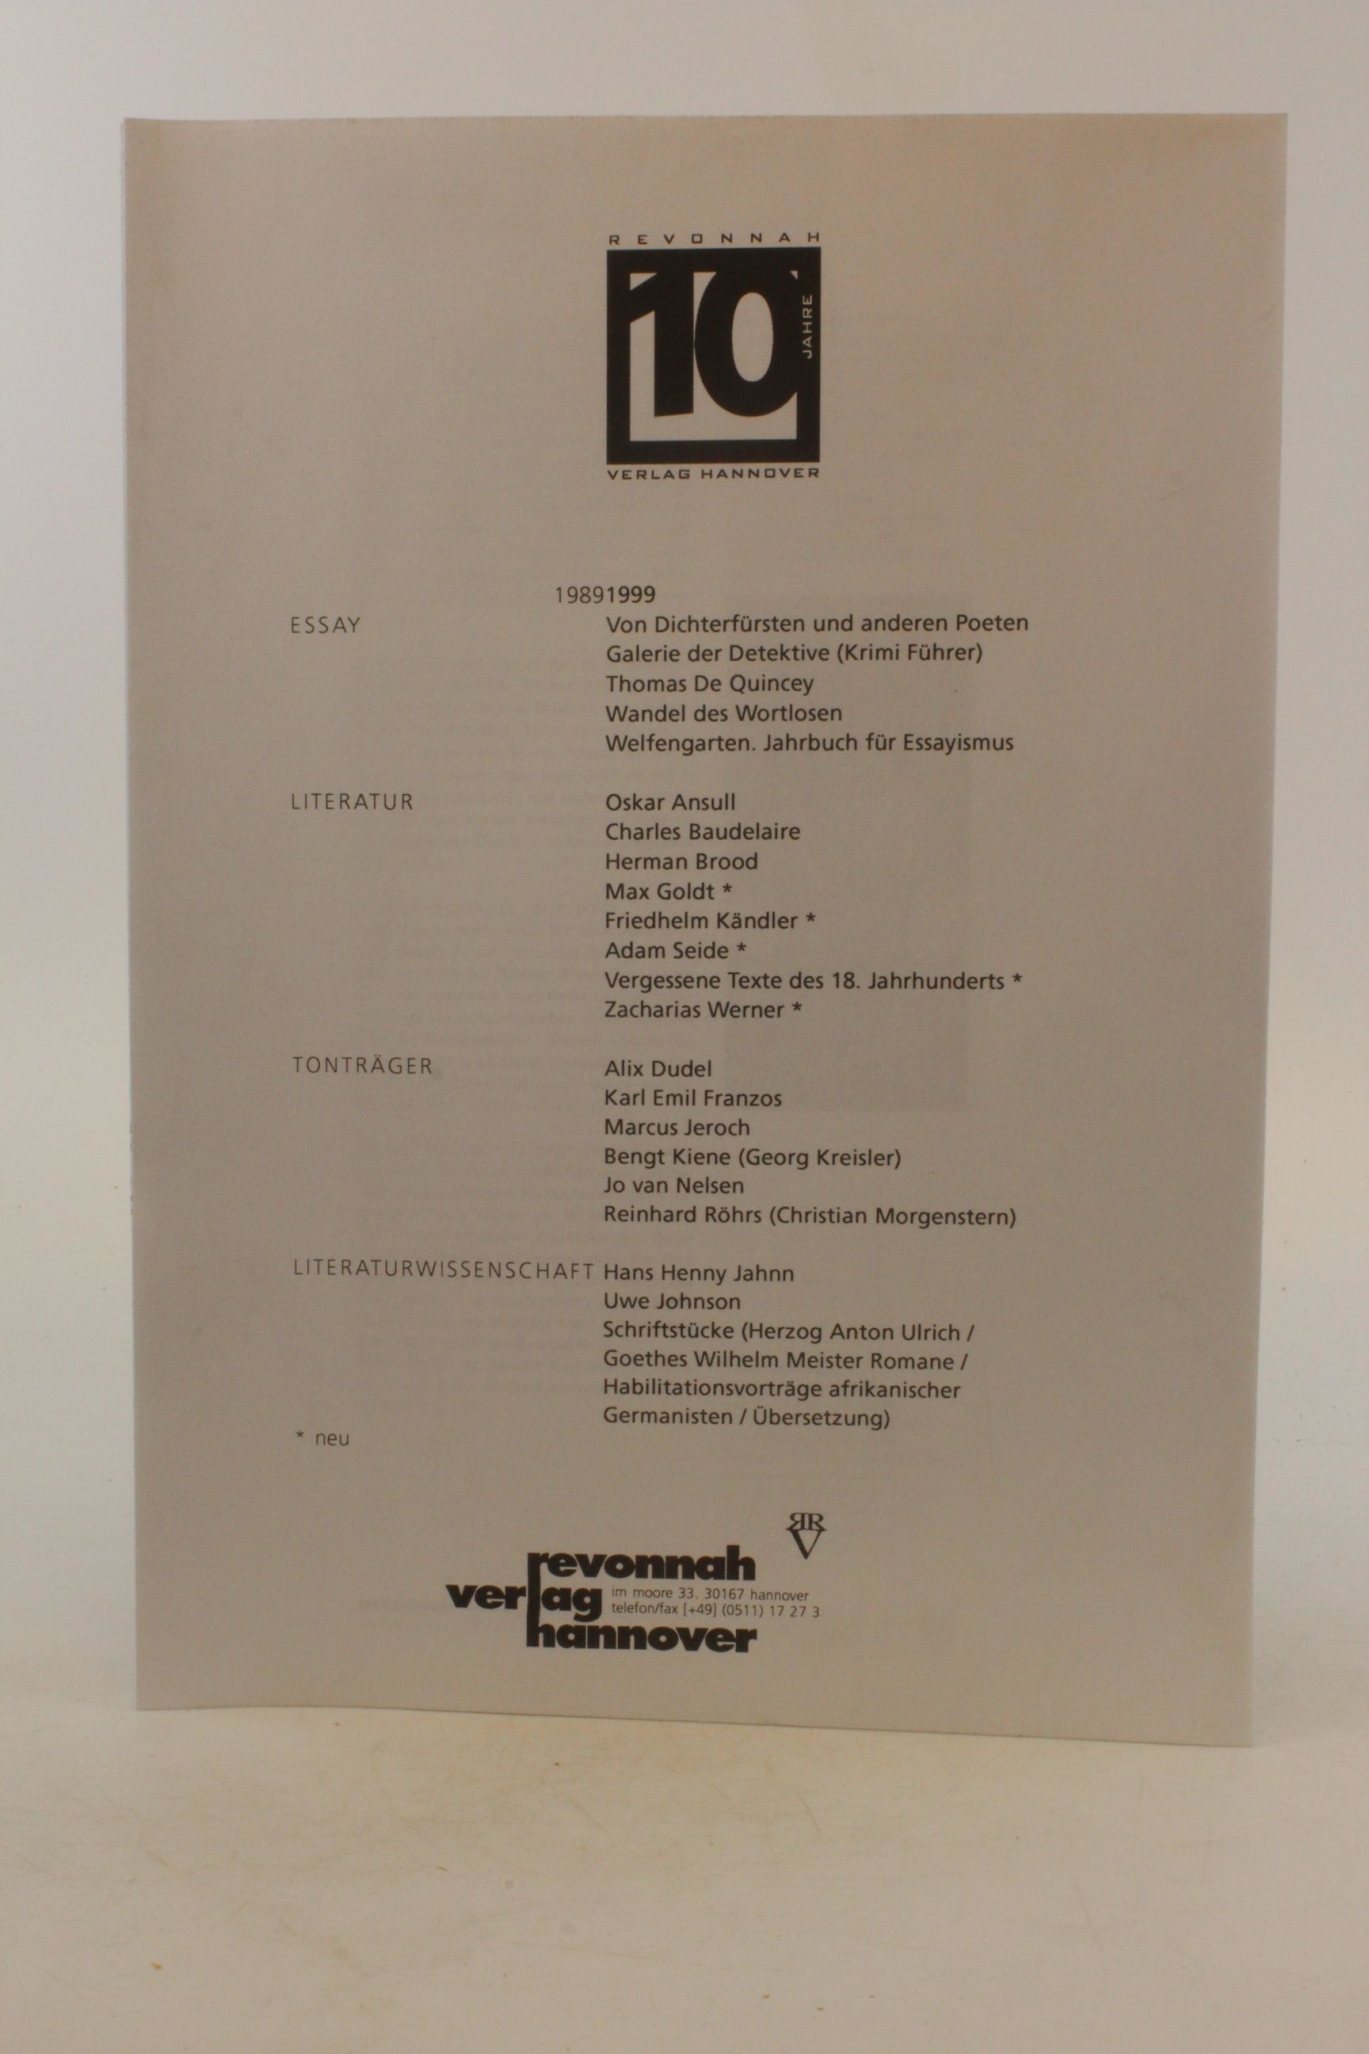 ohne Autor: Private Sammelmappe mit Materialien zum Revonnah Verlag Hannover ca. 1995 - 2001 Verlagsprogramme, Werbezettel, Zeitungsartikel